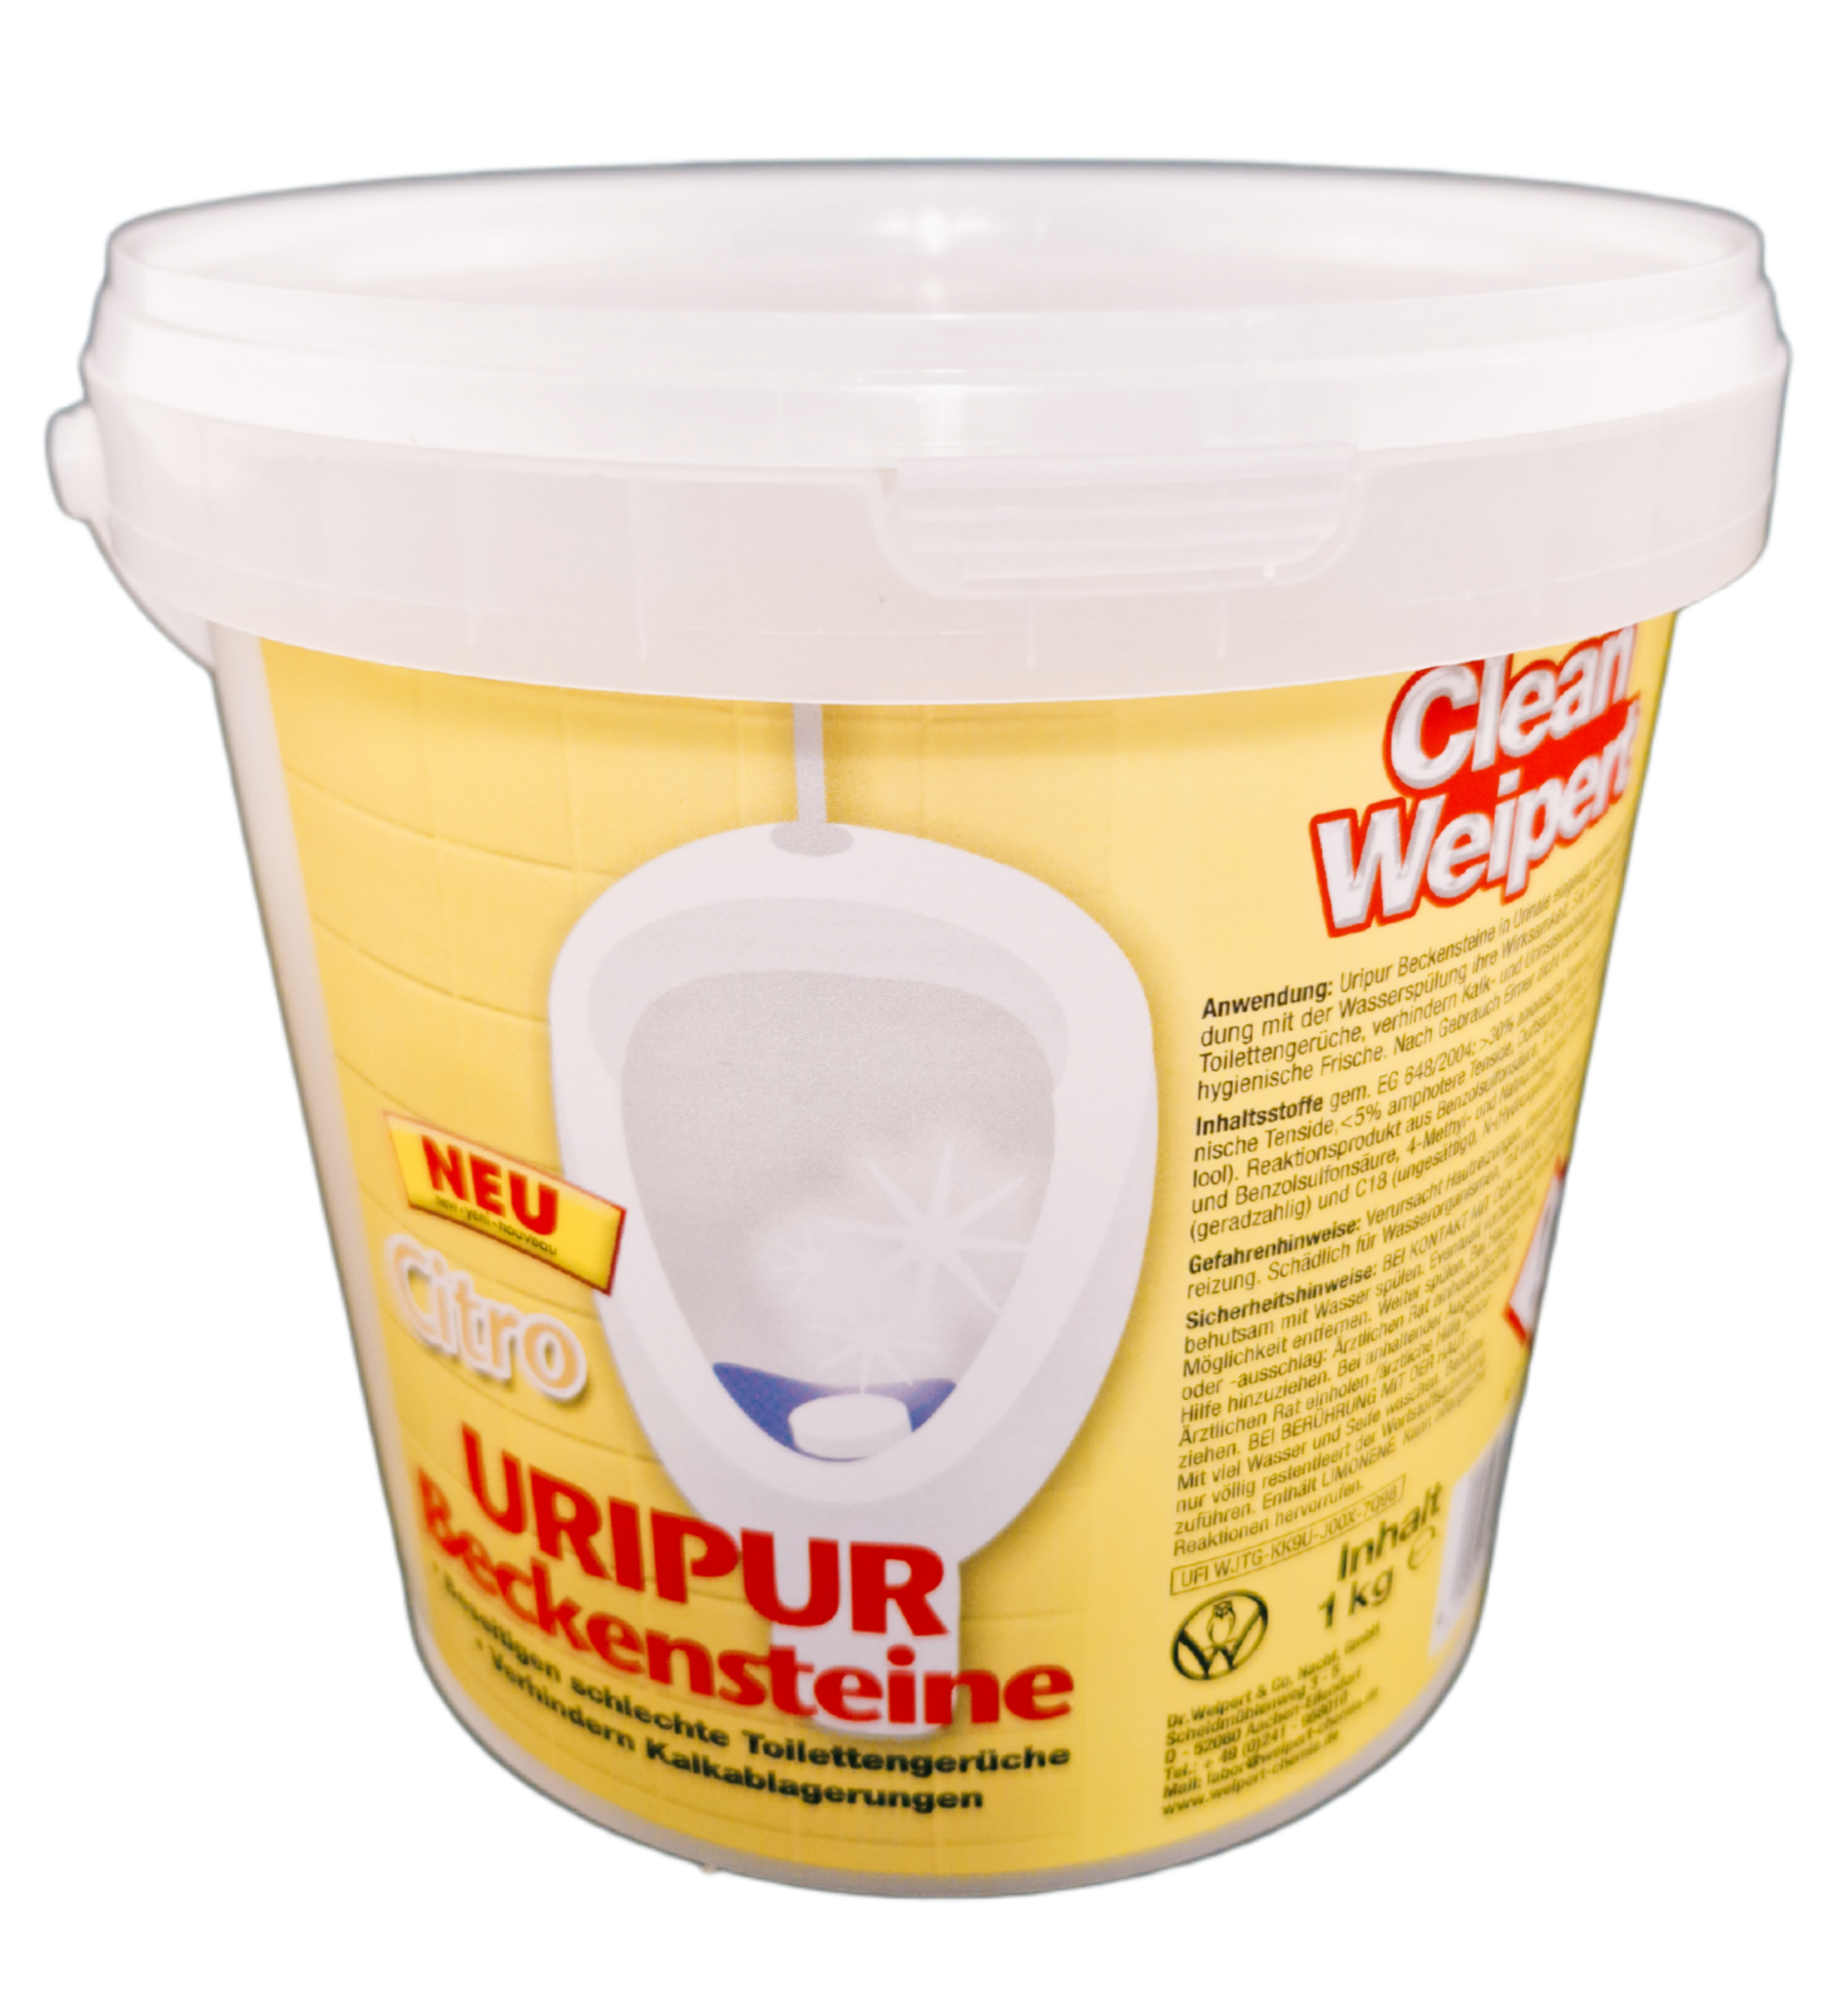 Clean Weipert Uripur Beckensteine Citro 1 Kg